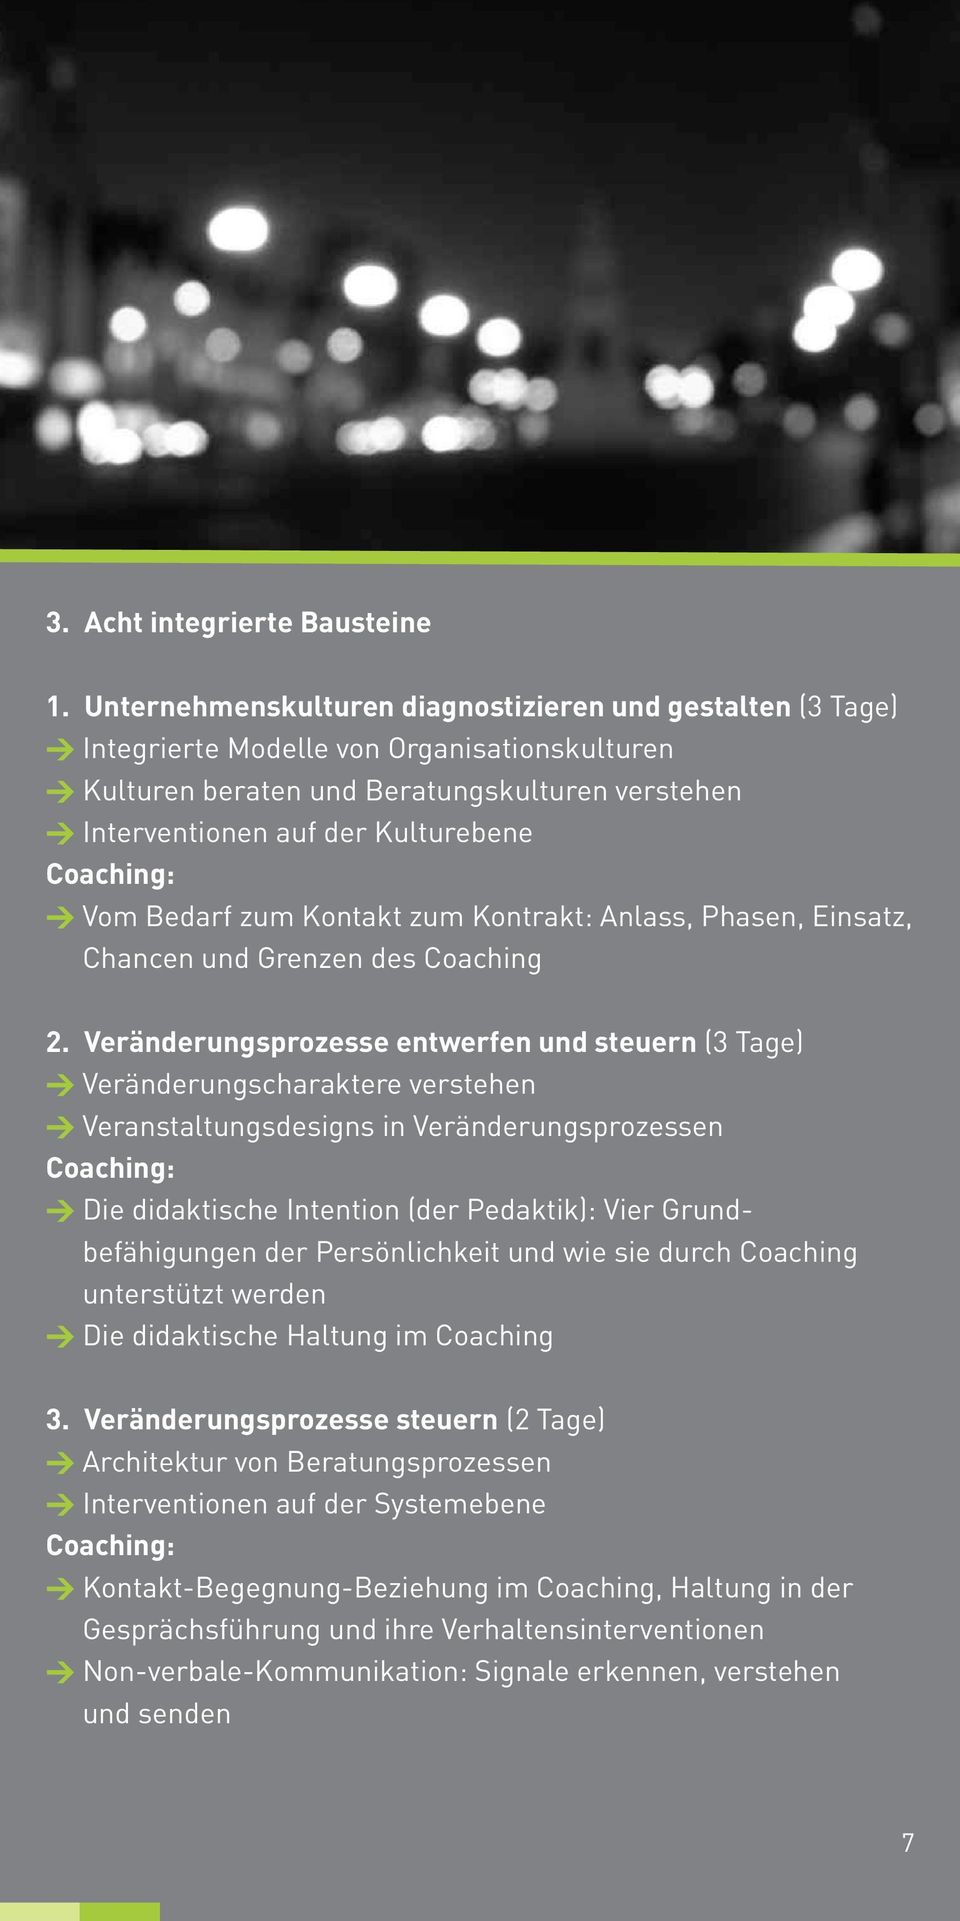 Coaching: > Vom Bedarf zum Kontakt zum Kontrakt: Anlass, Phasen, Einsatz, Chancen und Grenzen des Coaching 2.